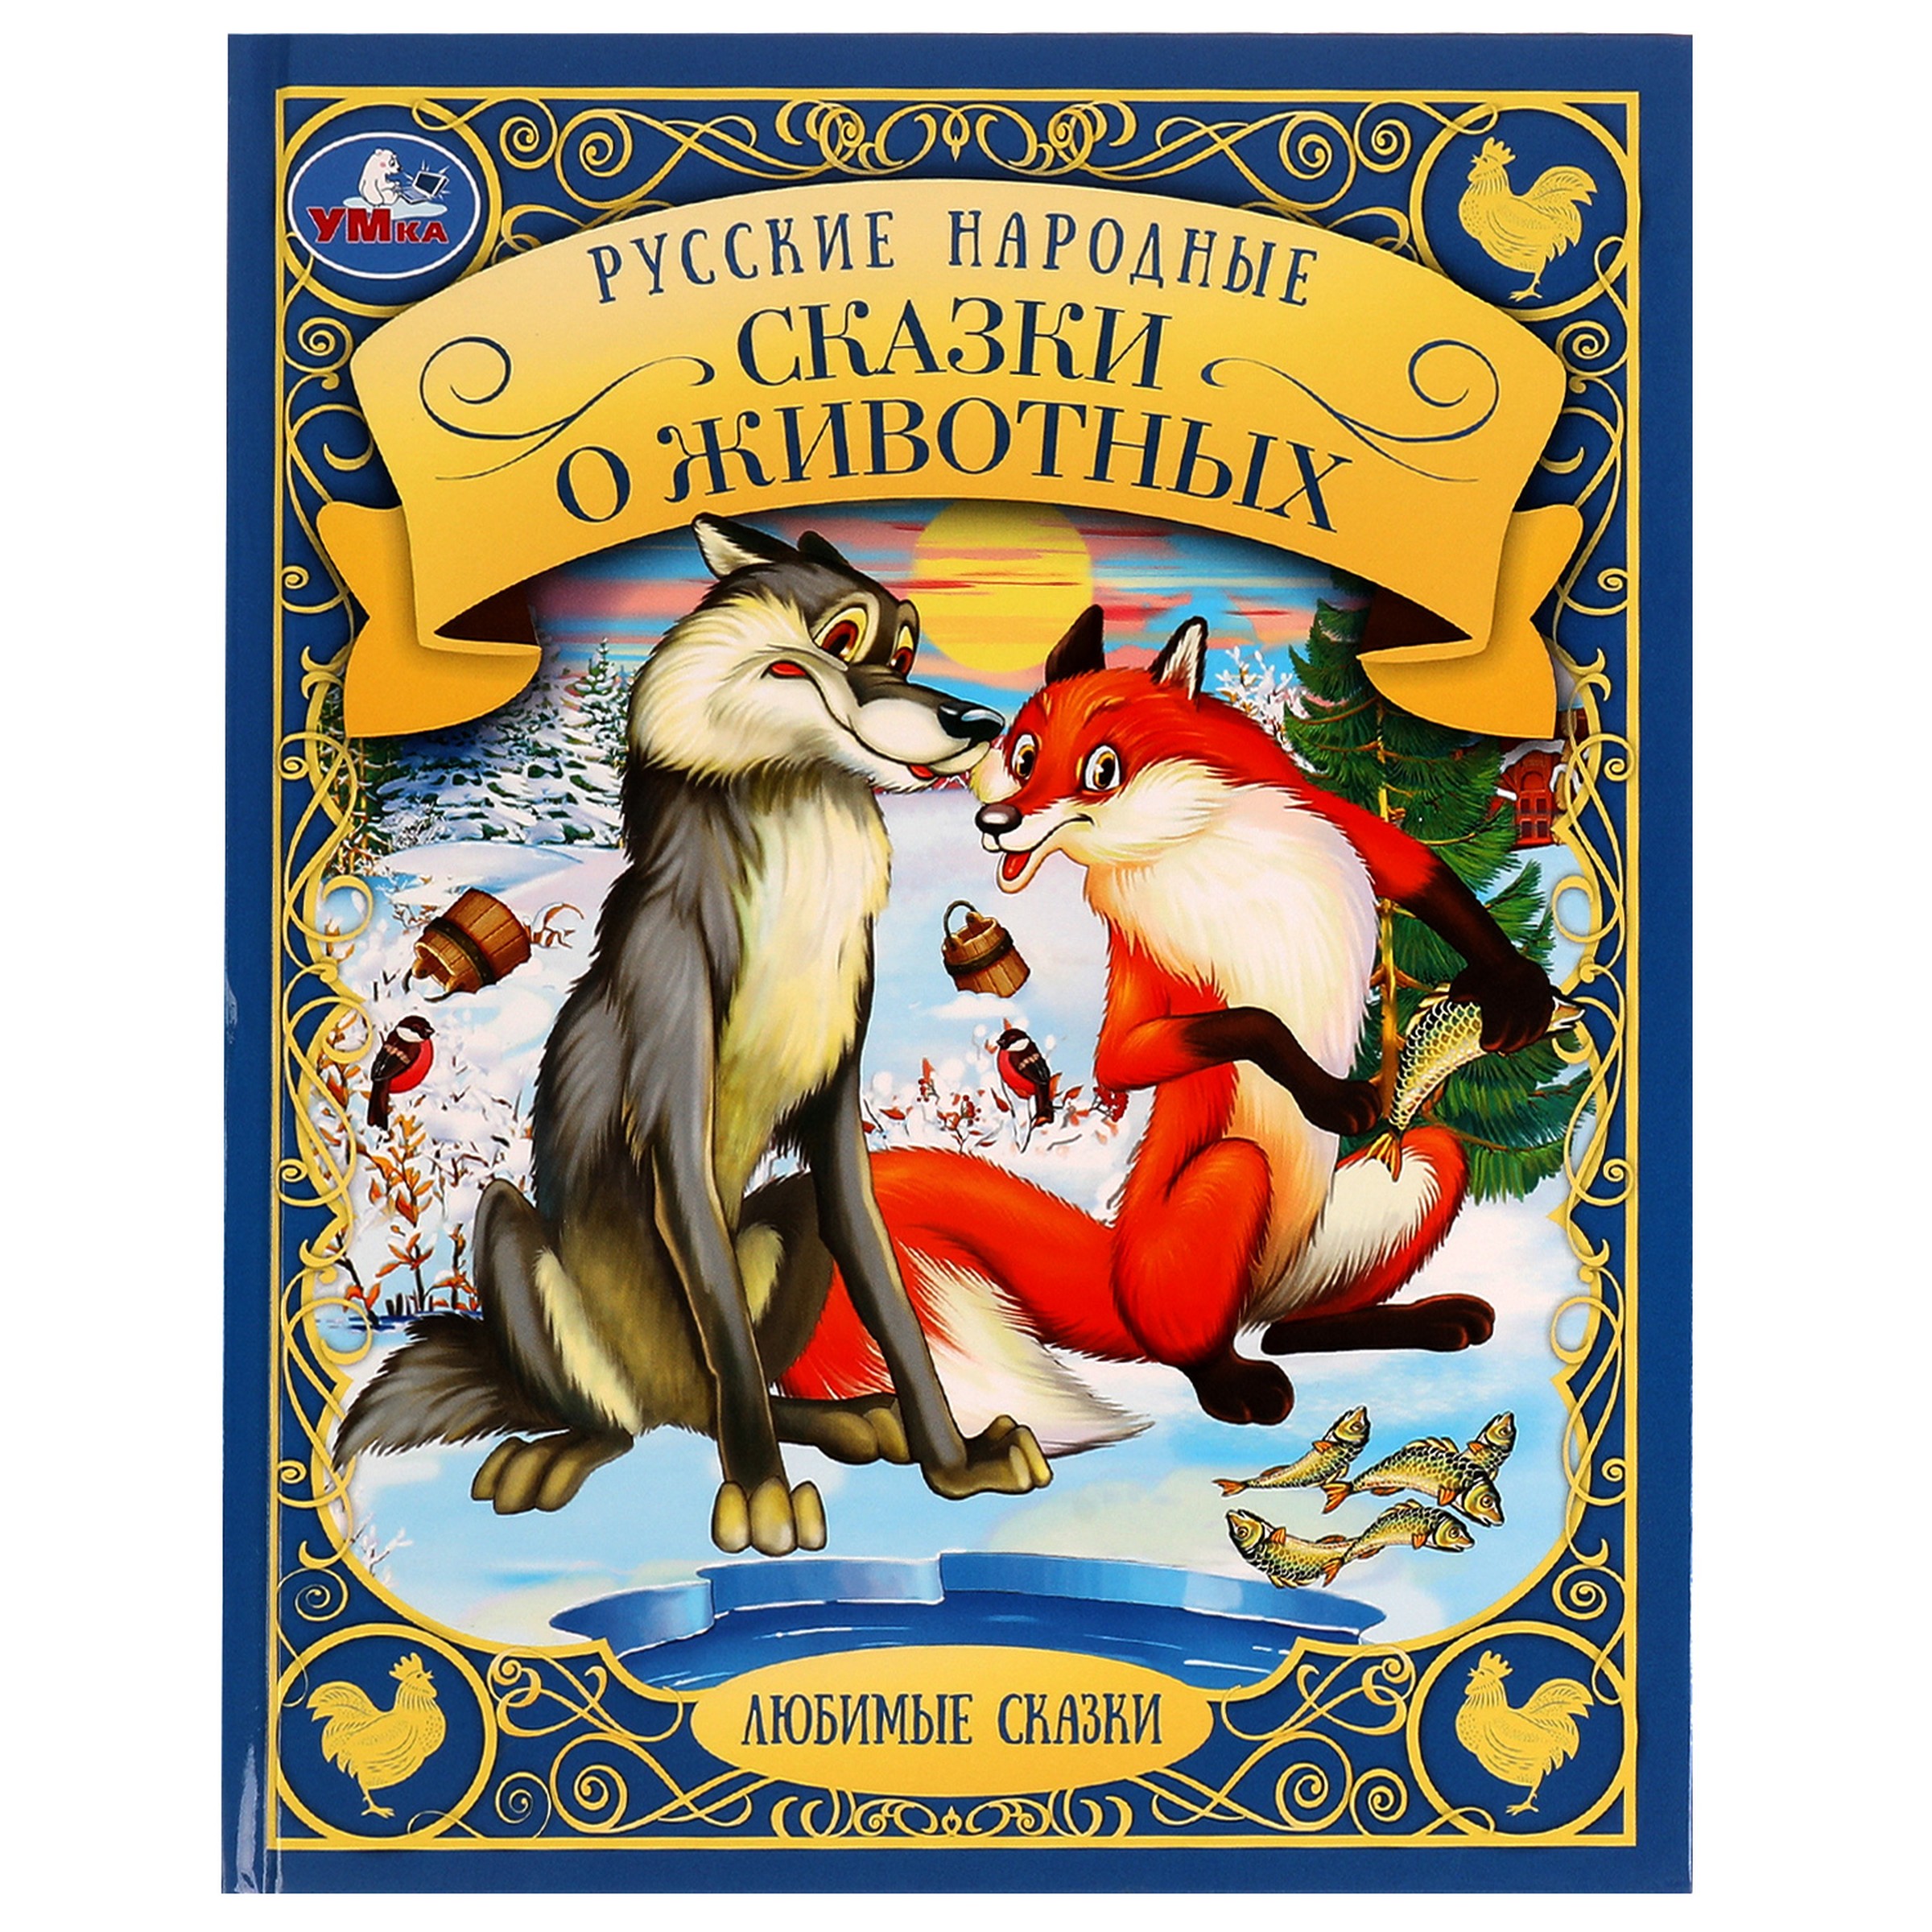 Любимые сказки. Русские народные сказки о животных